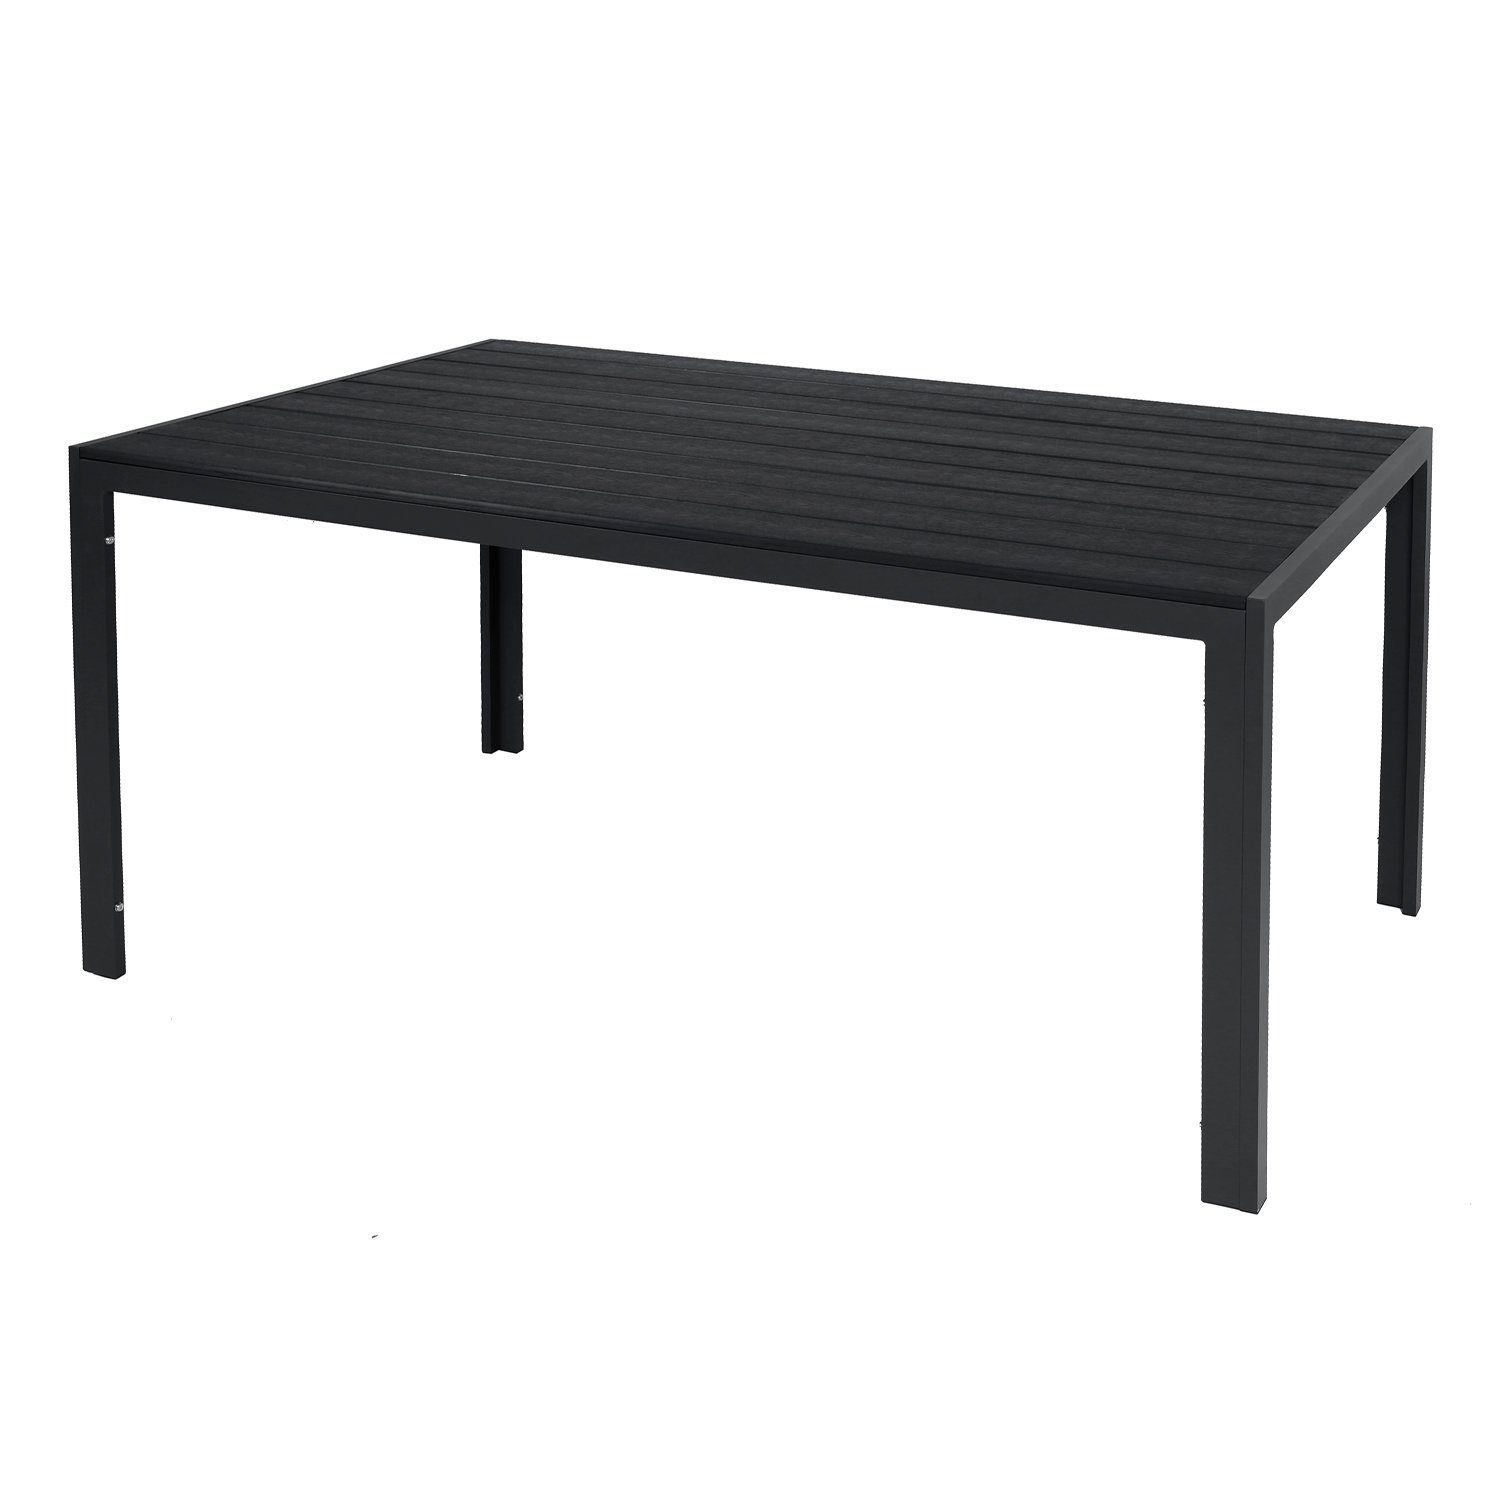 INDA-Exclusiv Küchentisch Großer Non-Wood Gartentisch 180x90cm aus Aluminium anthrazit / schwarz